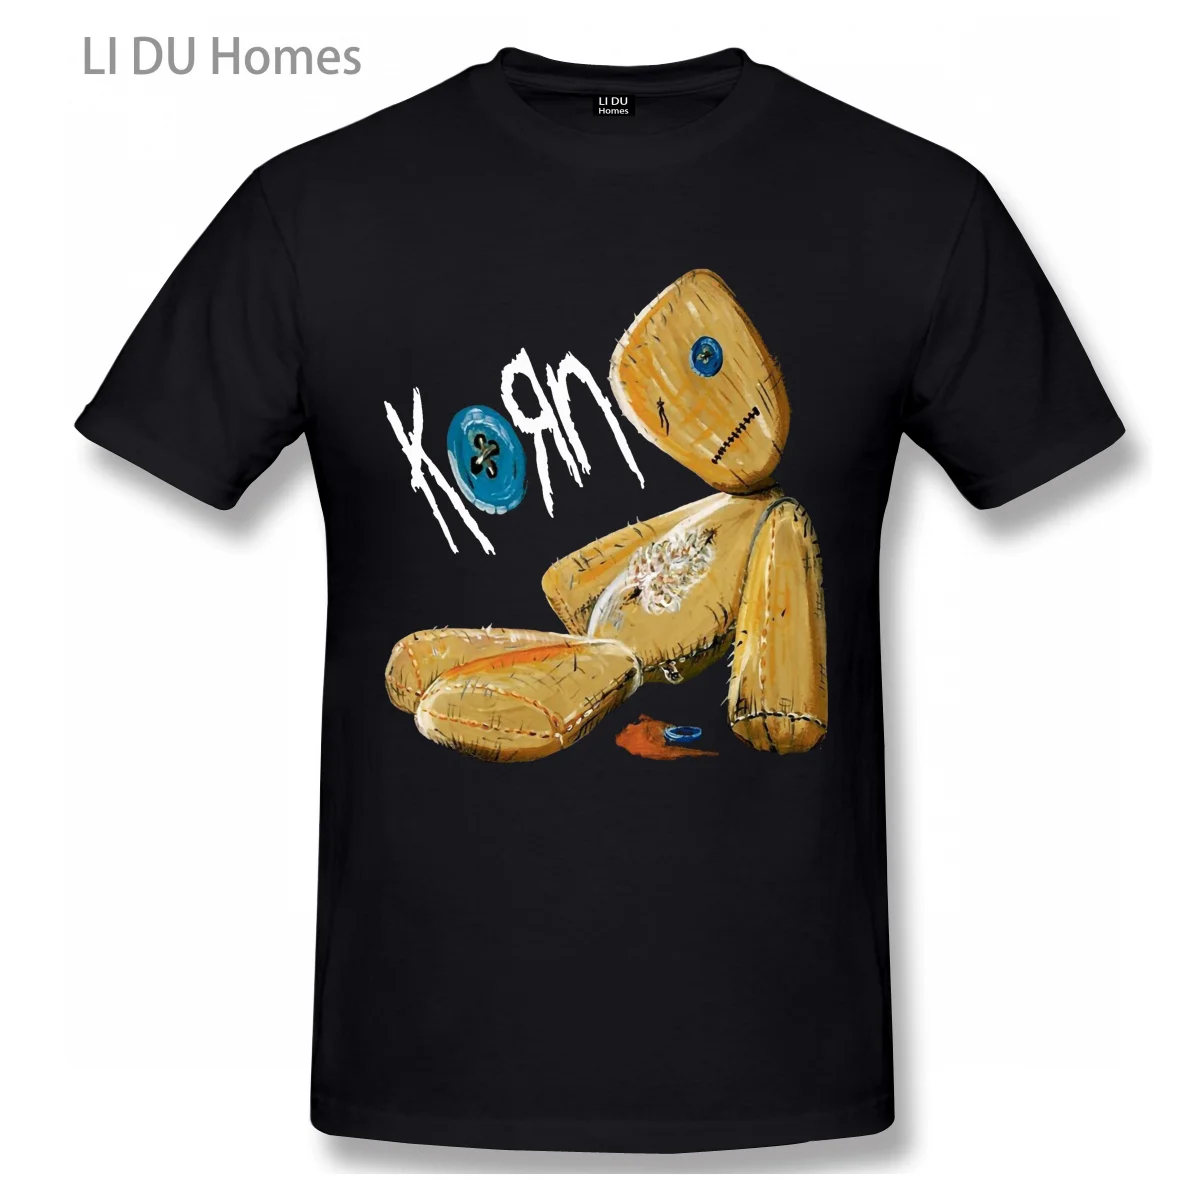 

Korn Issues Rock Band T Shirt Men/WoMen High Quality Cotton Summer T-shirt Short Sleeve Graphics Tshirt Brands Tee Top Gift